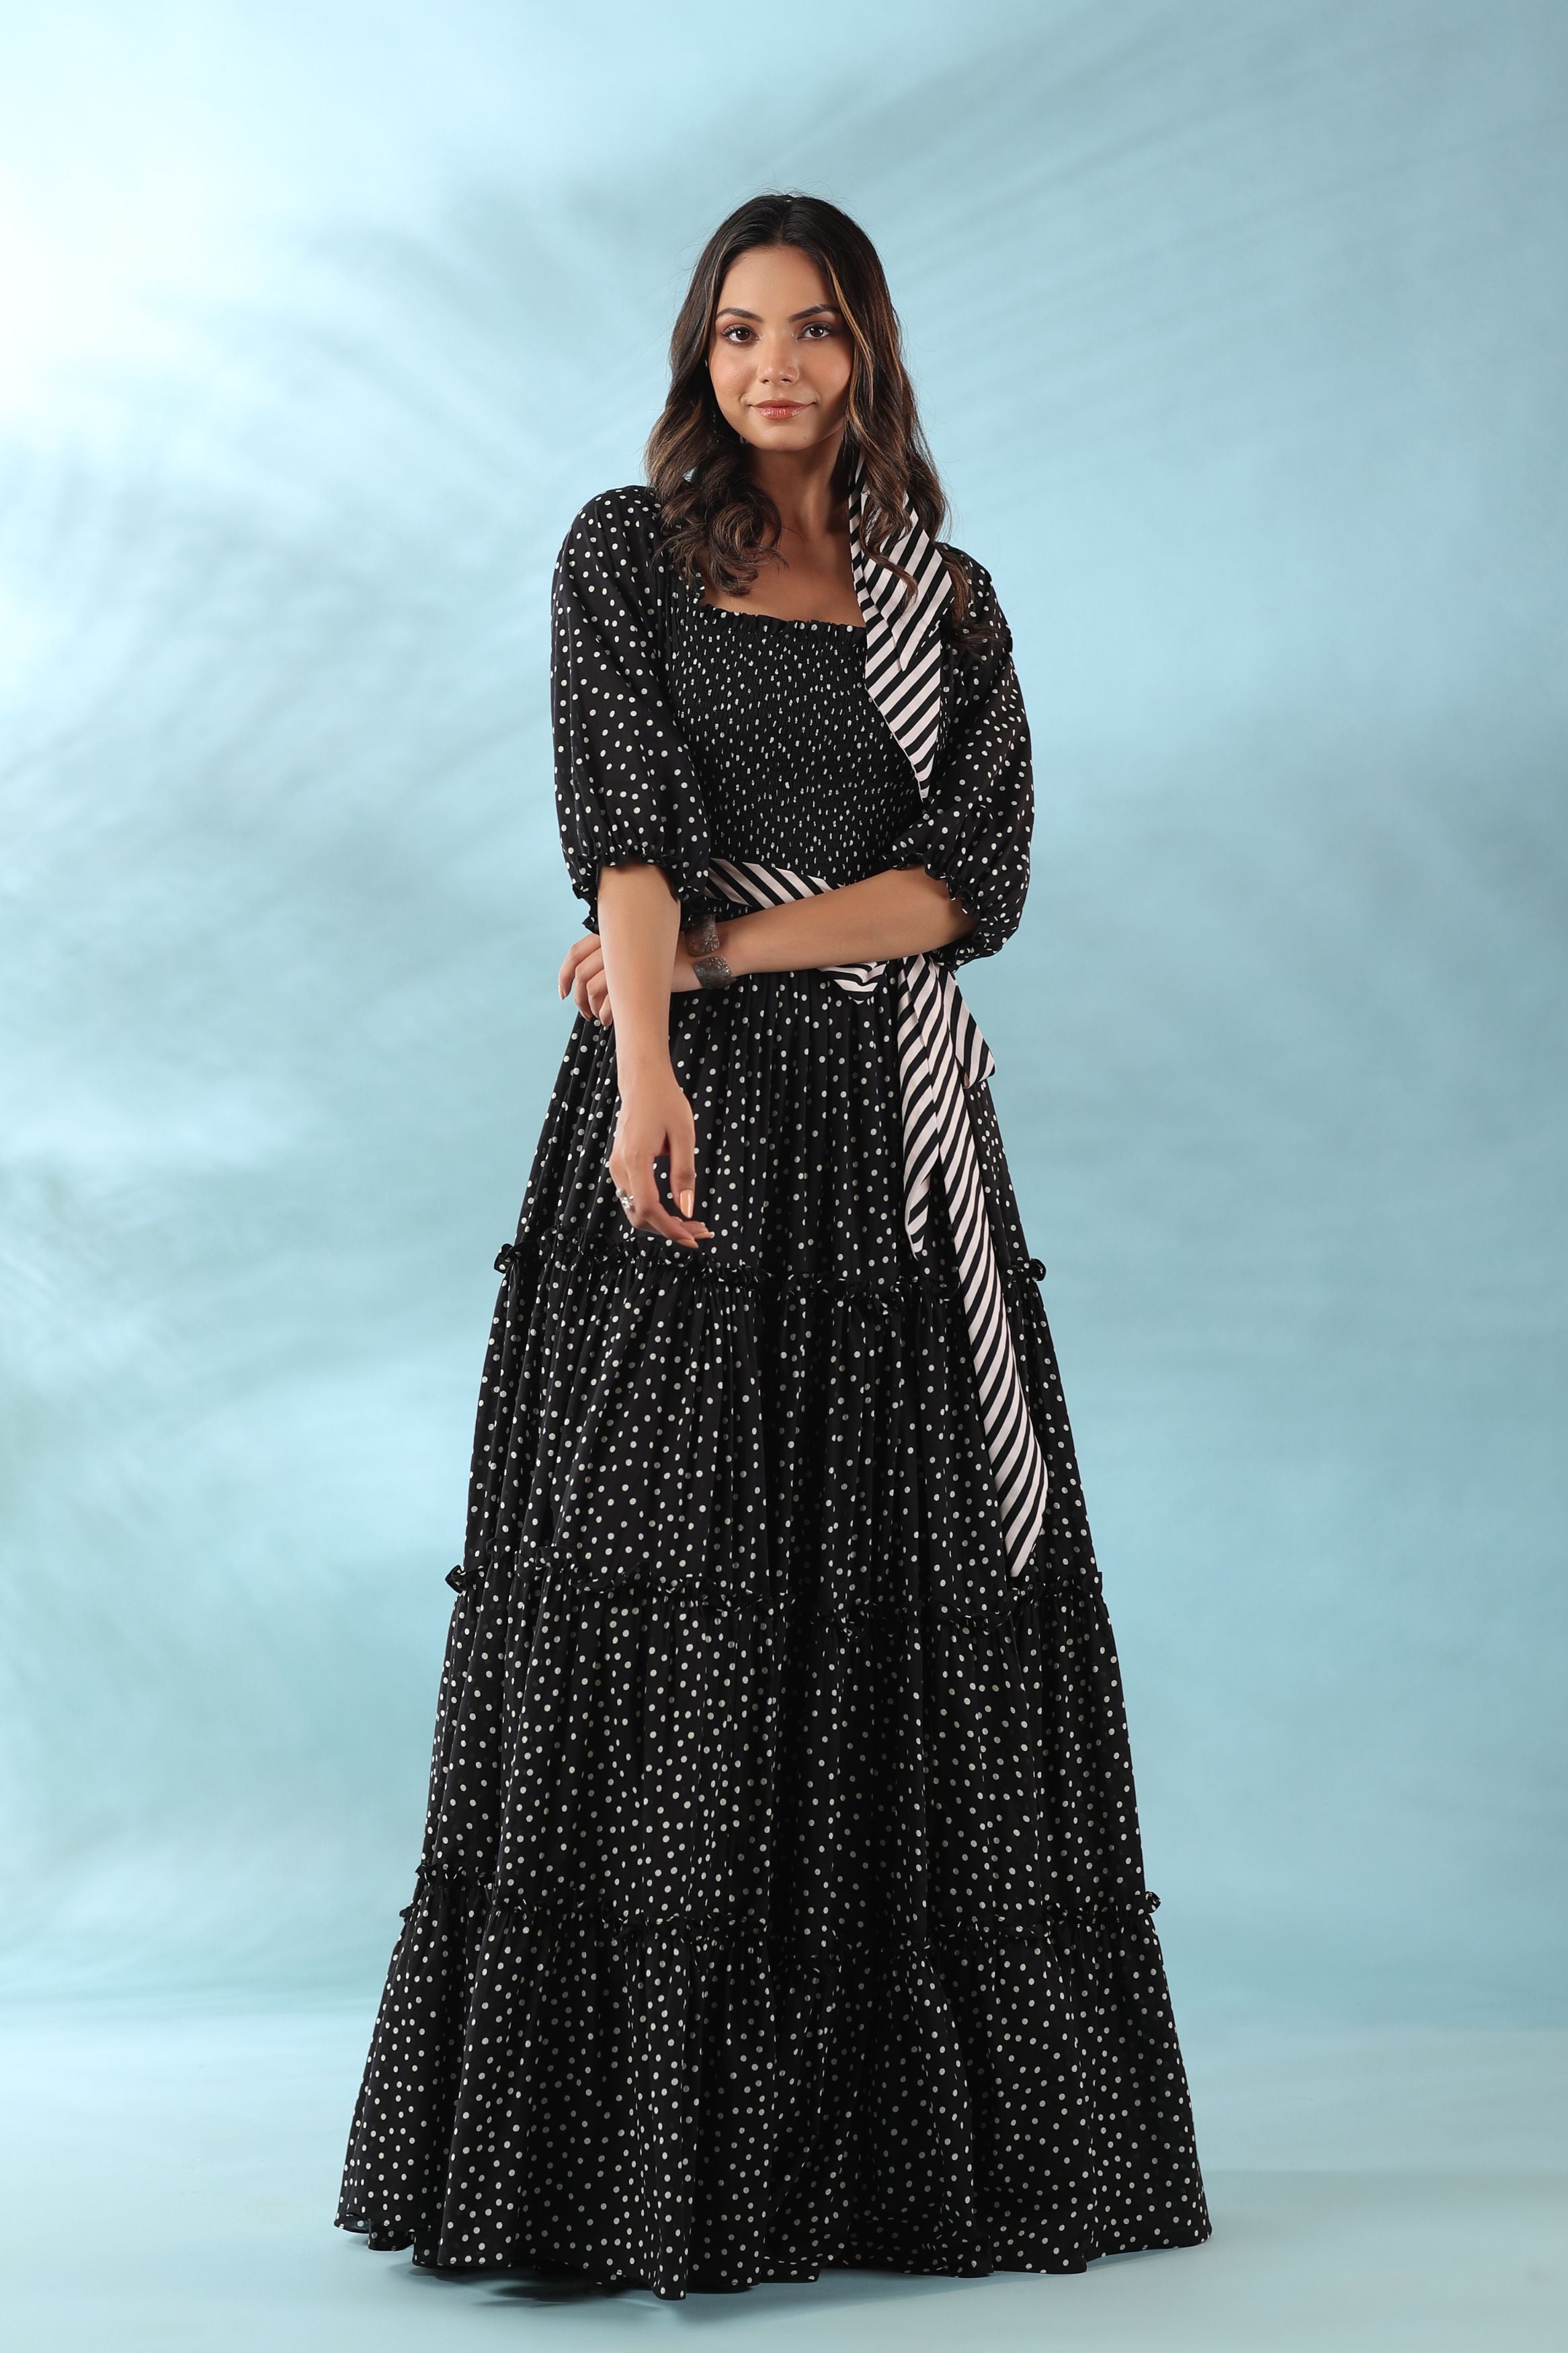 Designer Engagement Dress | Punjaban Designer Boutique